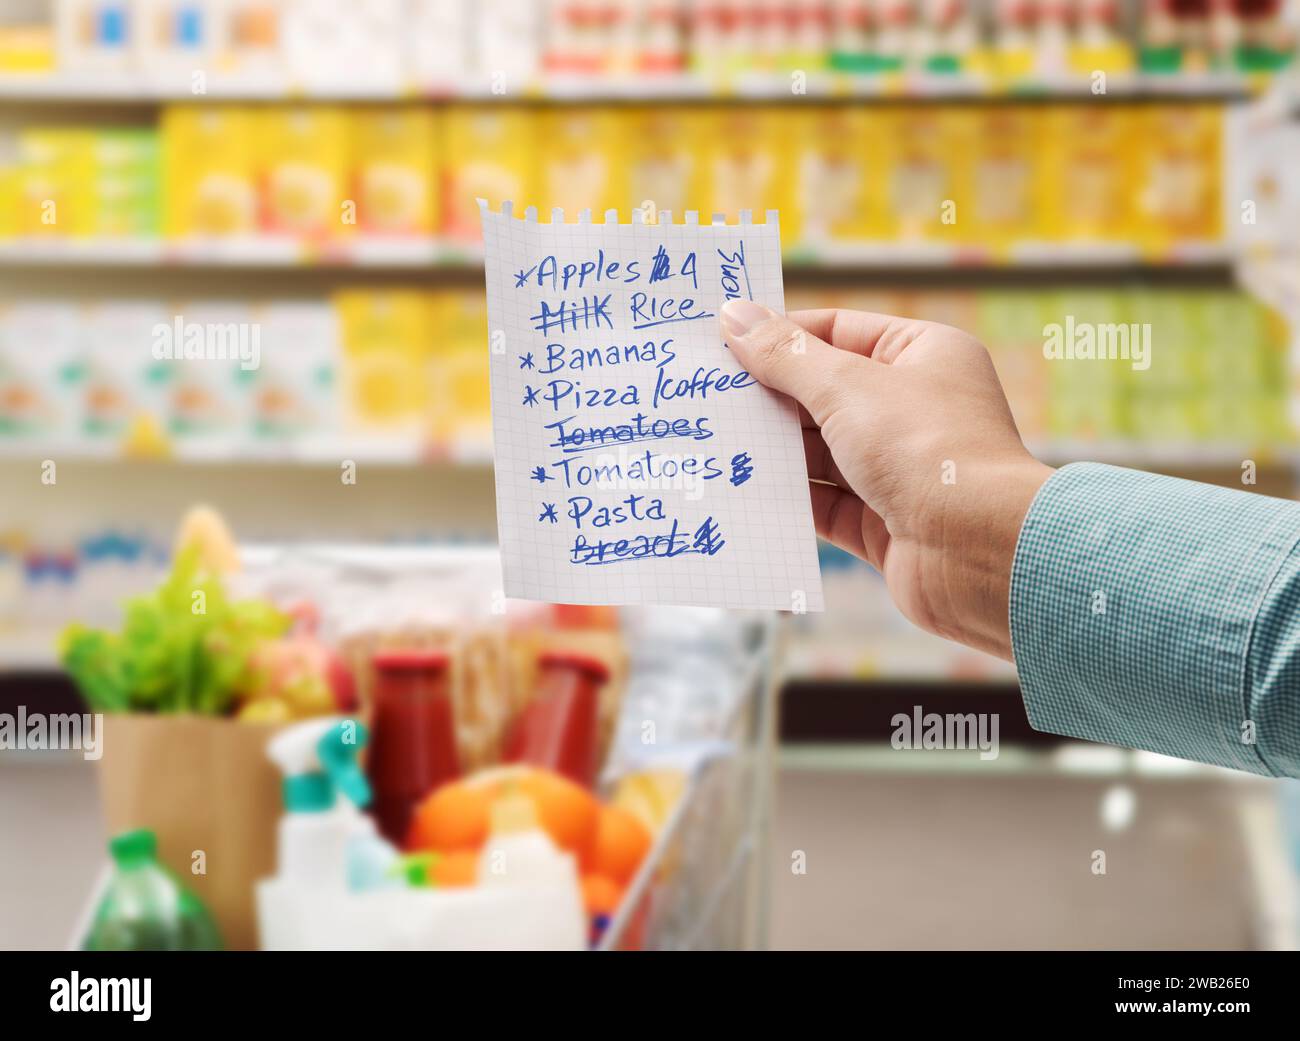 Frau im Supermarkt, die Lebensmittel kauft und eine Einkaufsliste hält, ein Bild vom Standpunkt Stockfoto